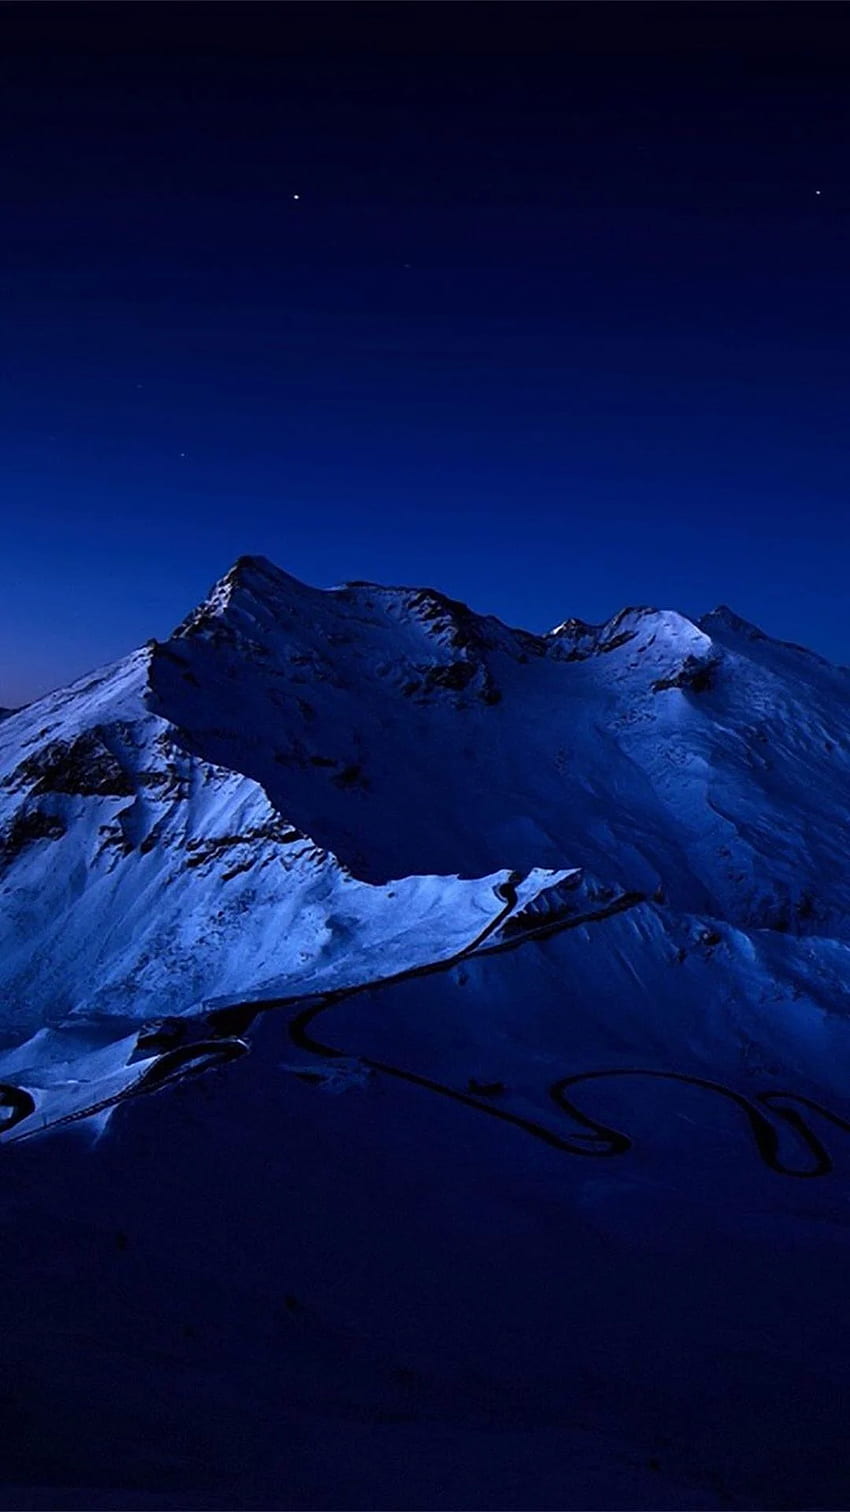 Nocne niebo nad śnieżnym szczytem górskim IPhone 6 Plus. Ciemnoniebieski, niebieski estetyczny ciemny, niebieski, góra iOS Tapeta na telefon HD